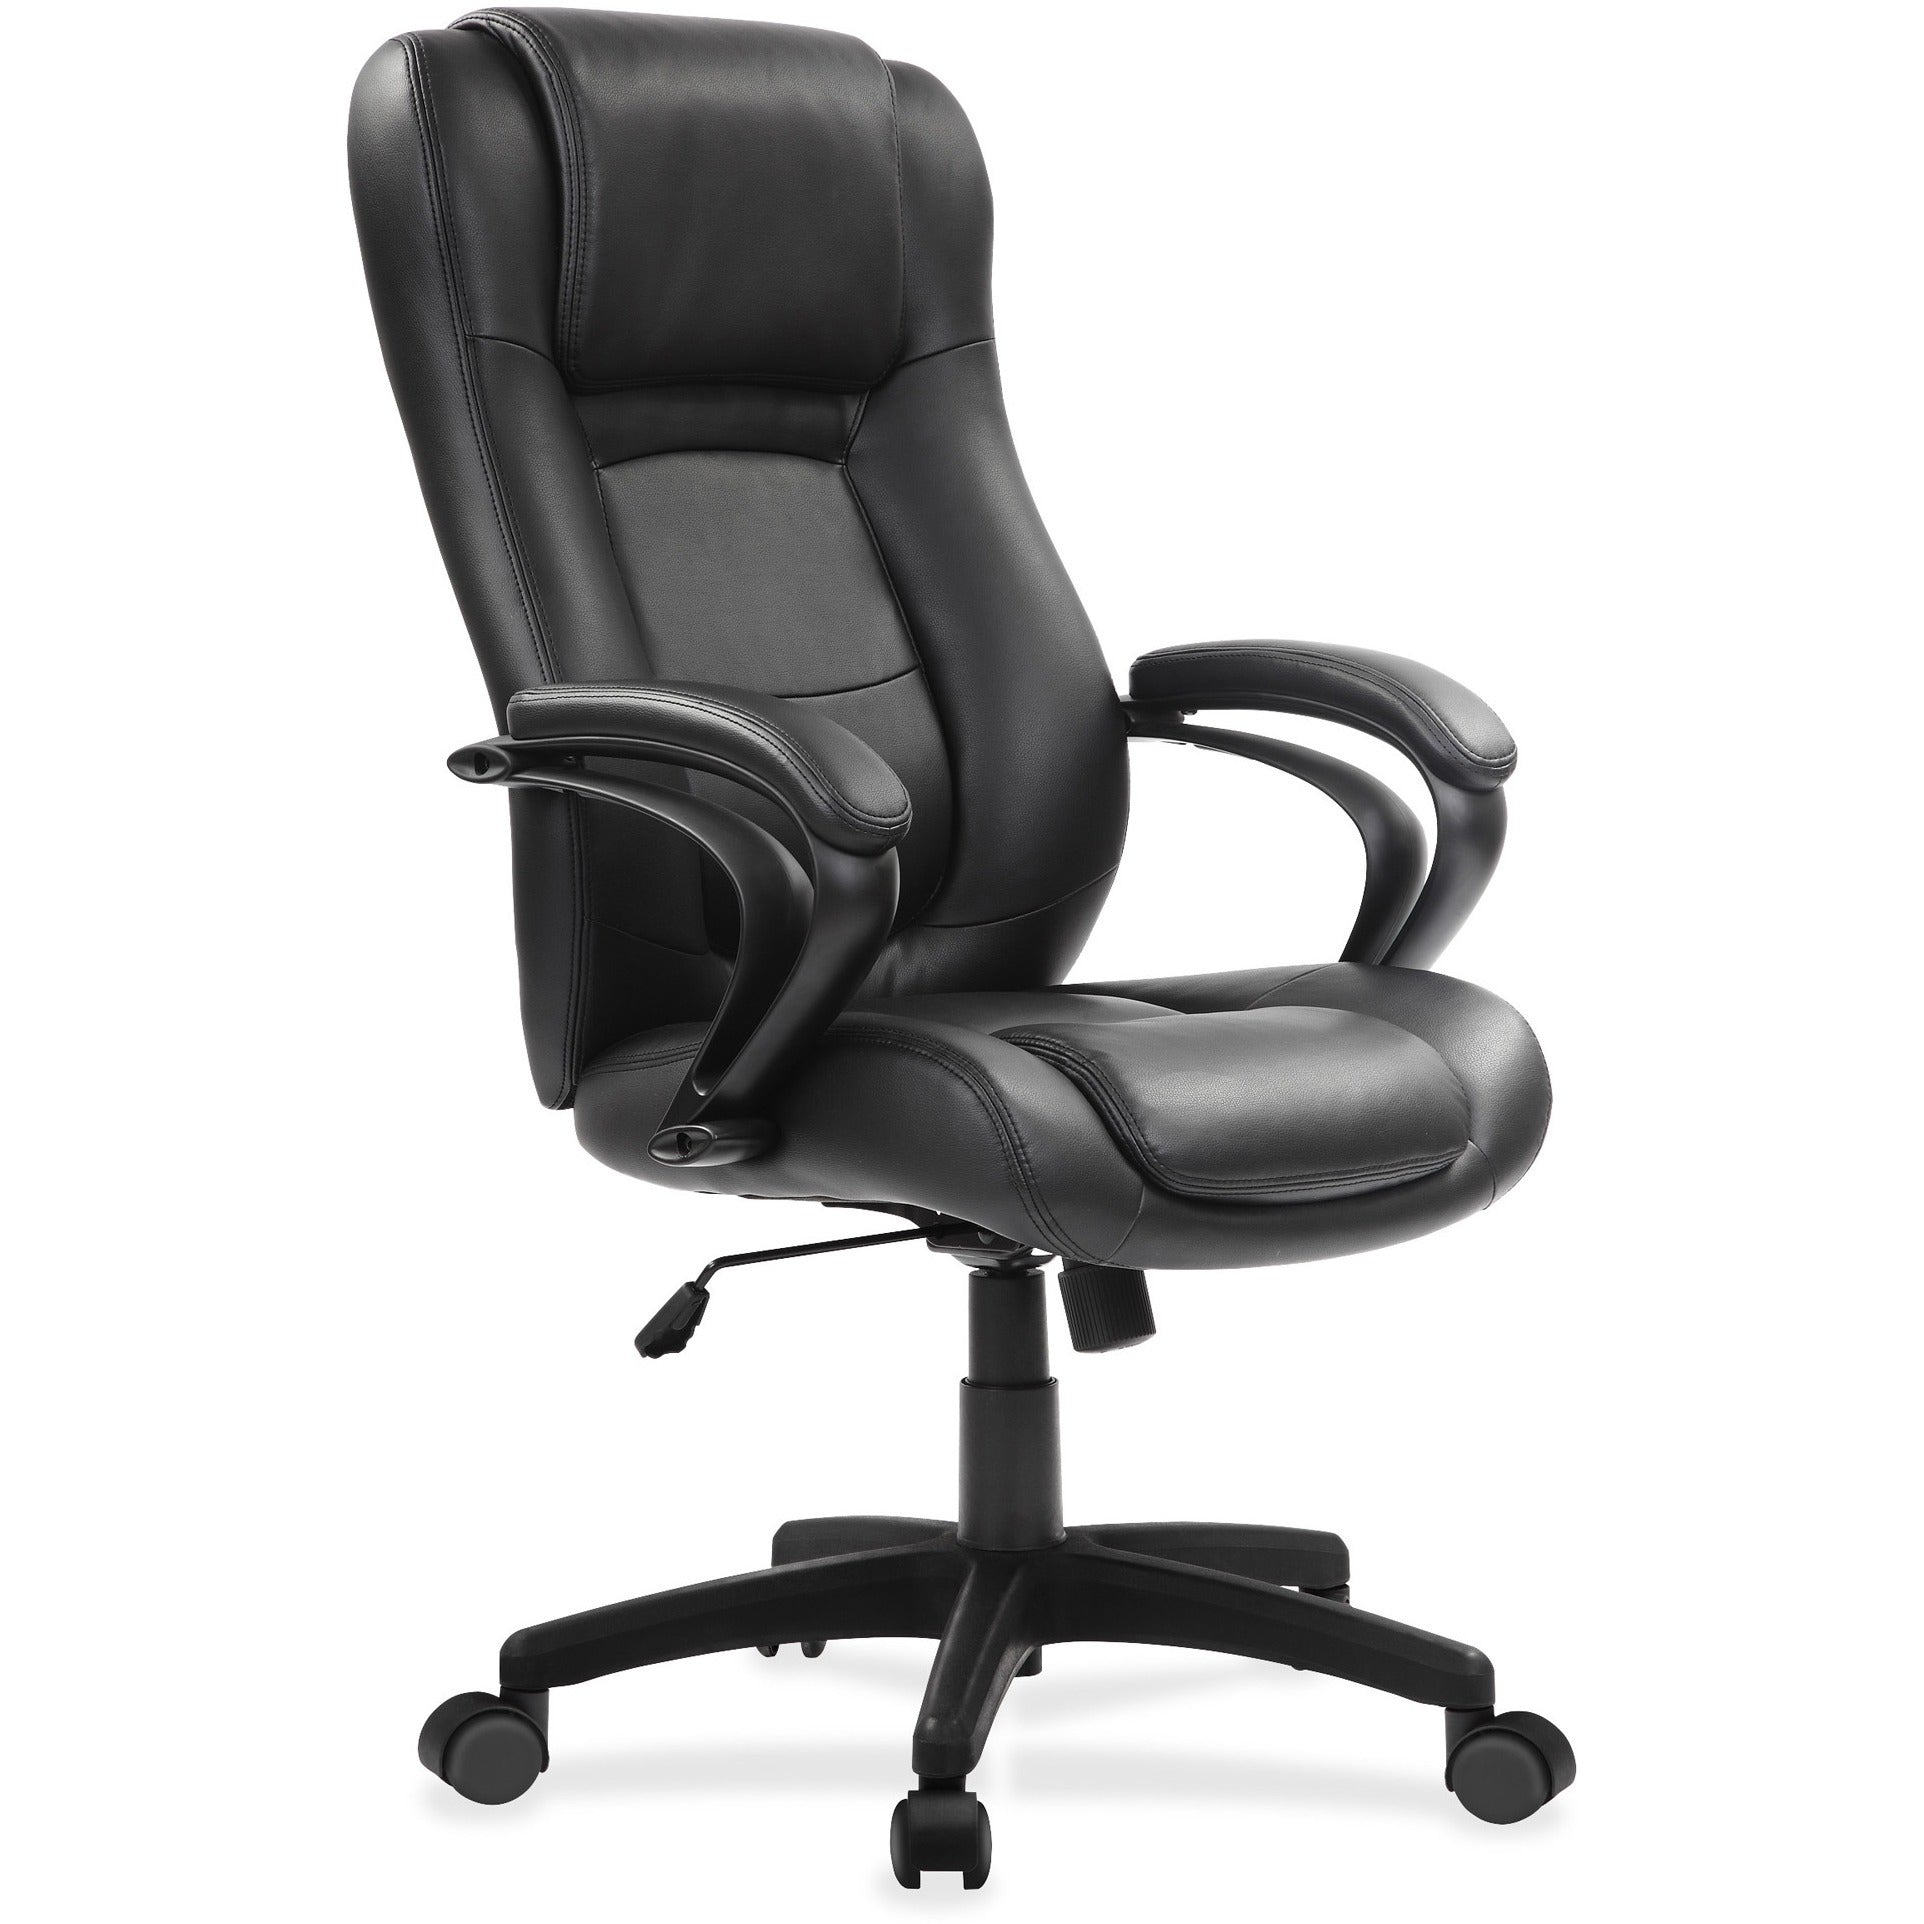 eurotech-pembroke-mid-back-executive-chair-black-bonded-leather-seat-black-bonded-leather-back-high-back-5-star-base-1-each_eutle521 - 5